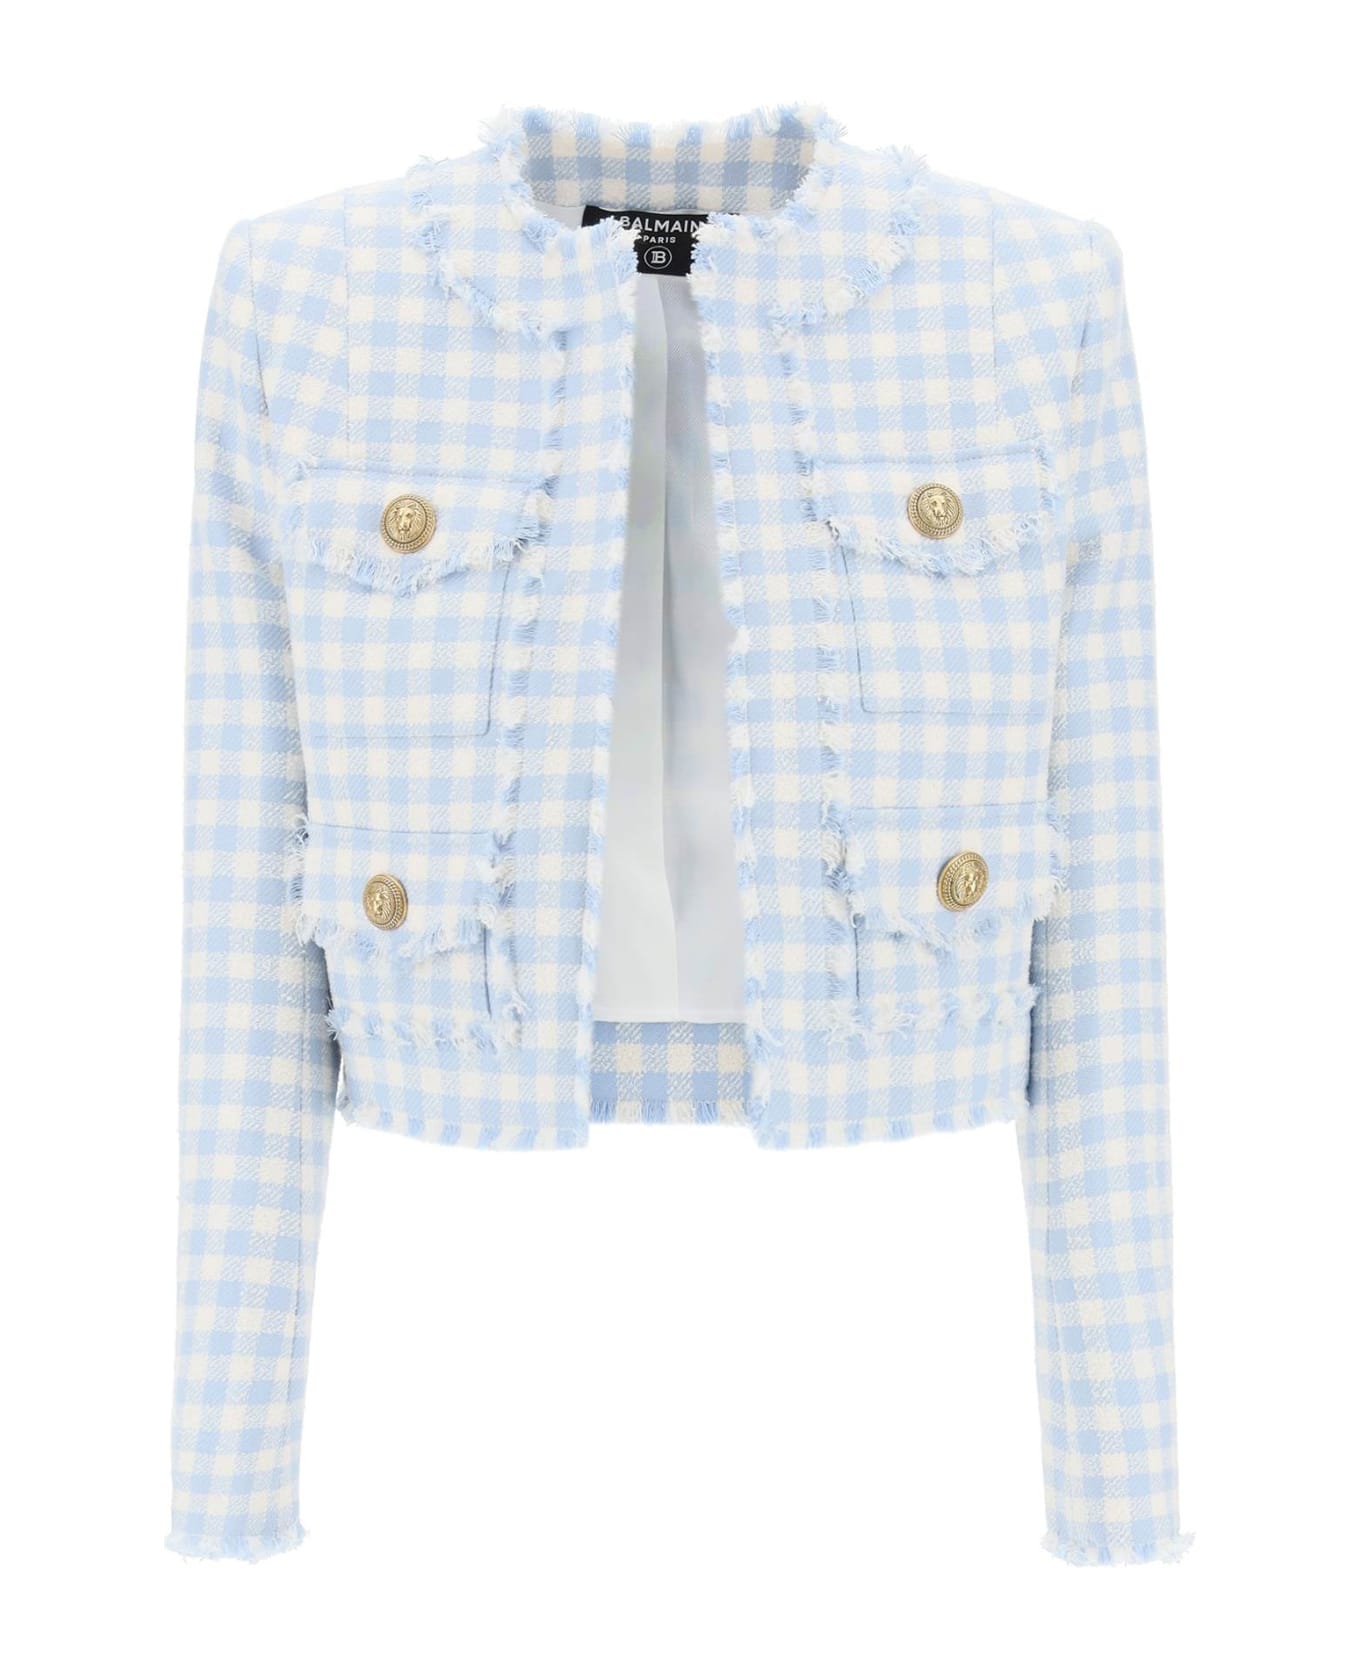 Balmain Bolero Jacket In Tweed With Gingham Pattern - Bleu pale/blanc